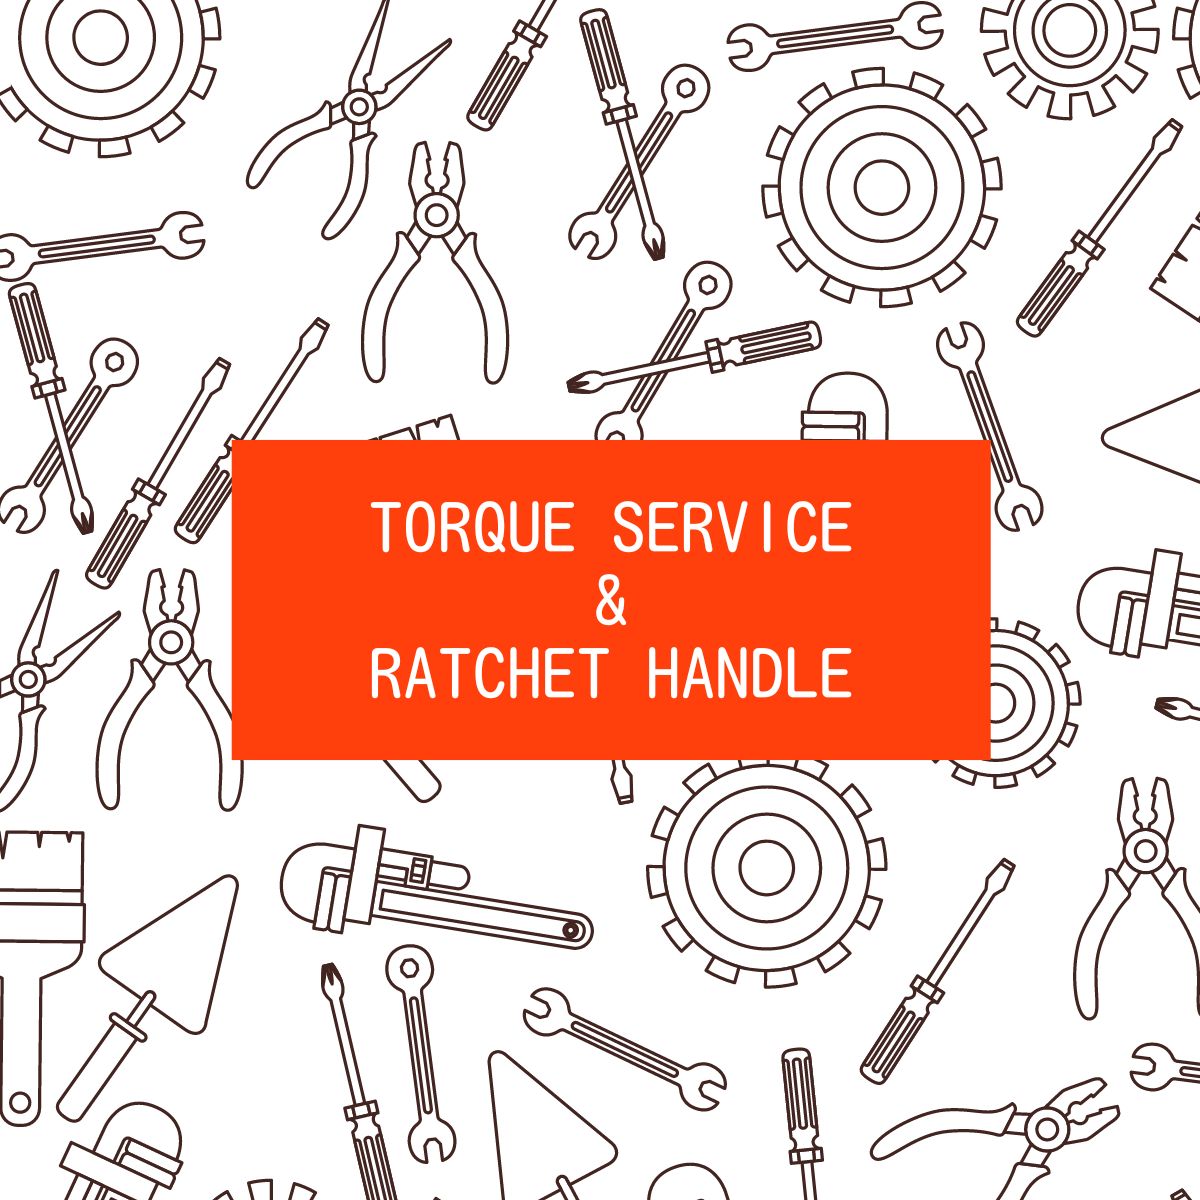 Torque Service & Ratchet Handle